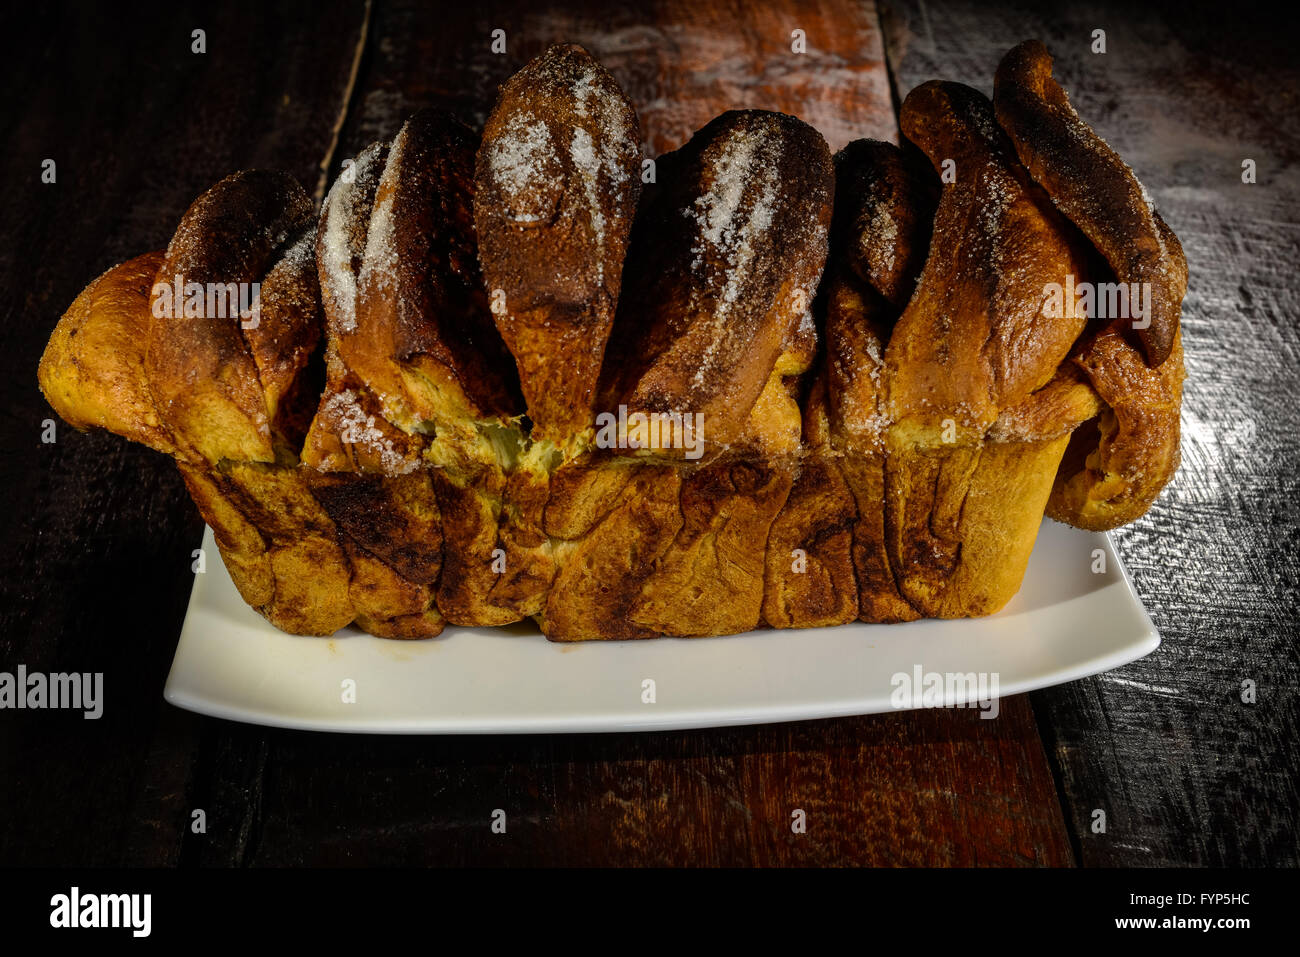 German yeast cake Stock Photo